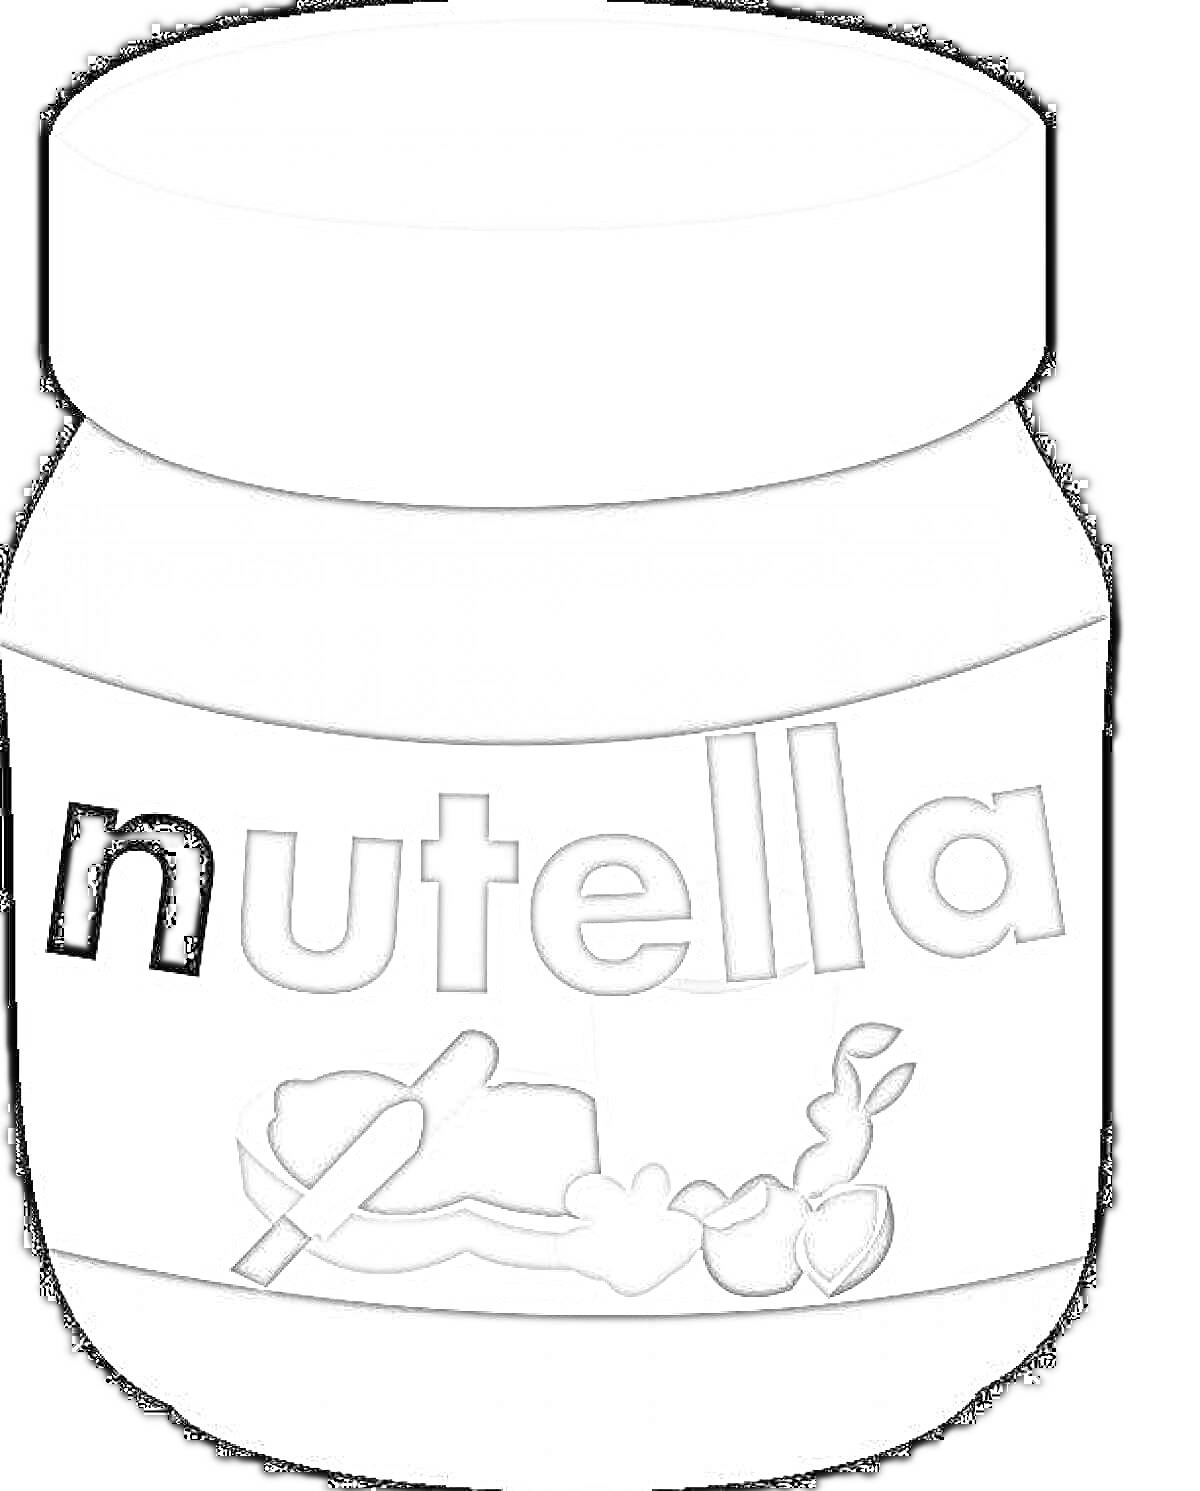 Раскраска Банка Нутелла с логотипом и изображением хлеба с намазанной пастой и орехами на этикетке